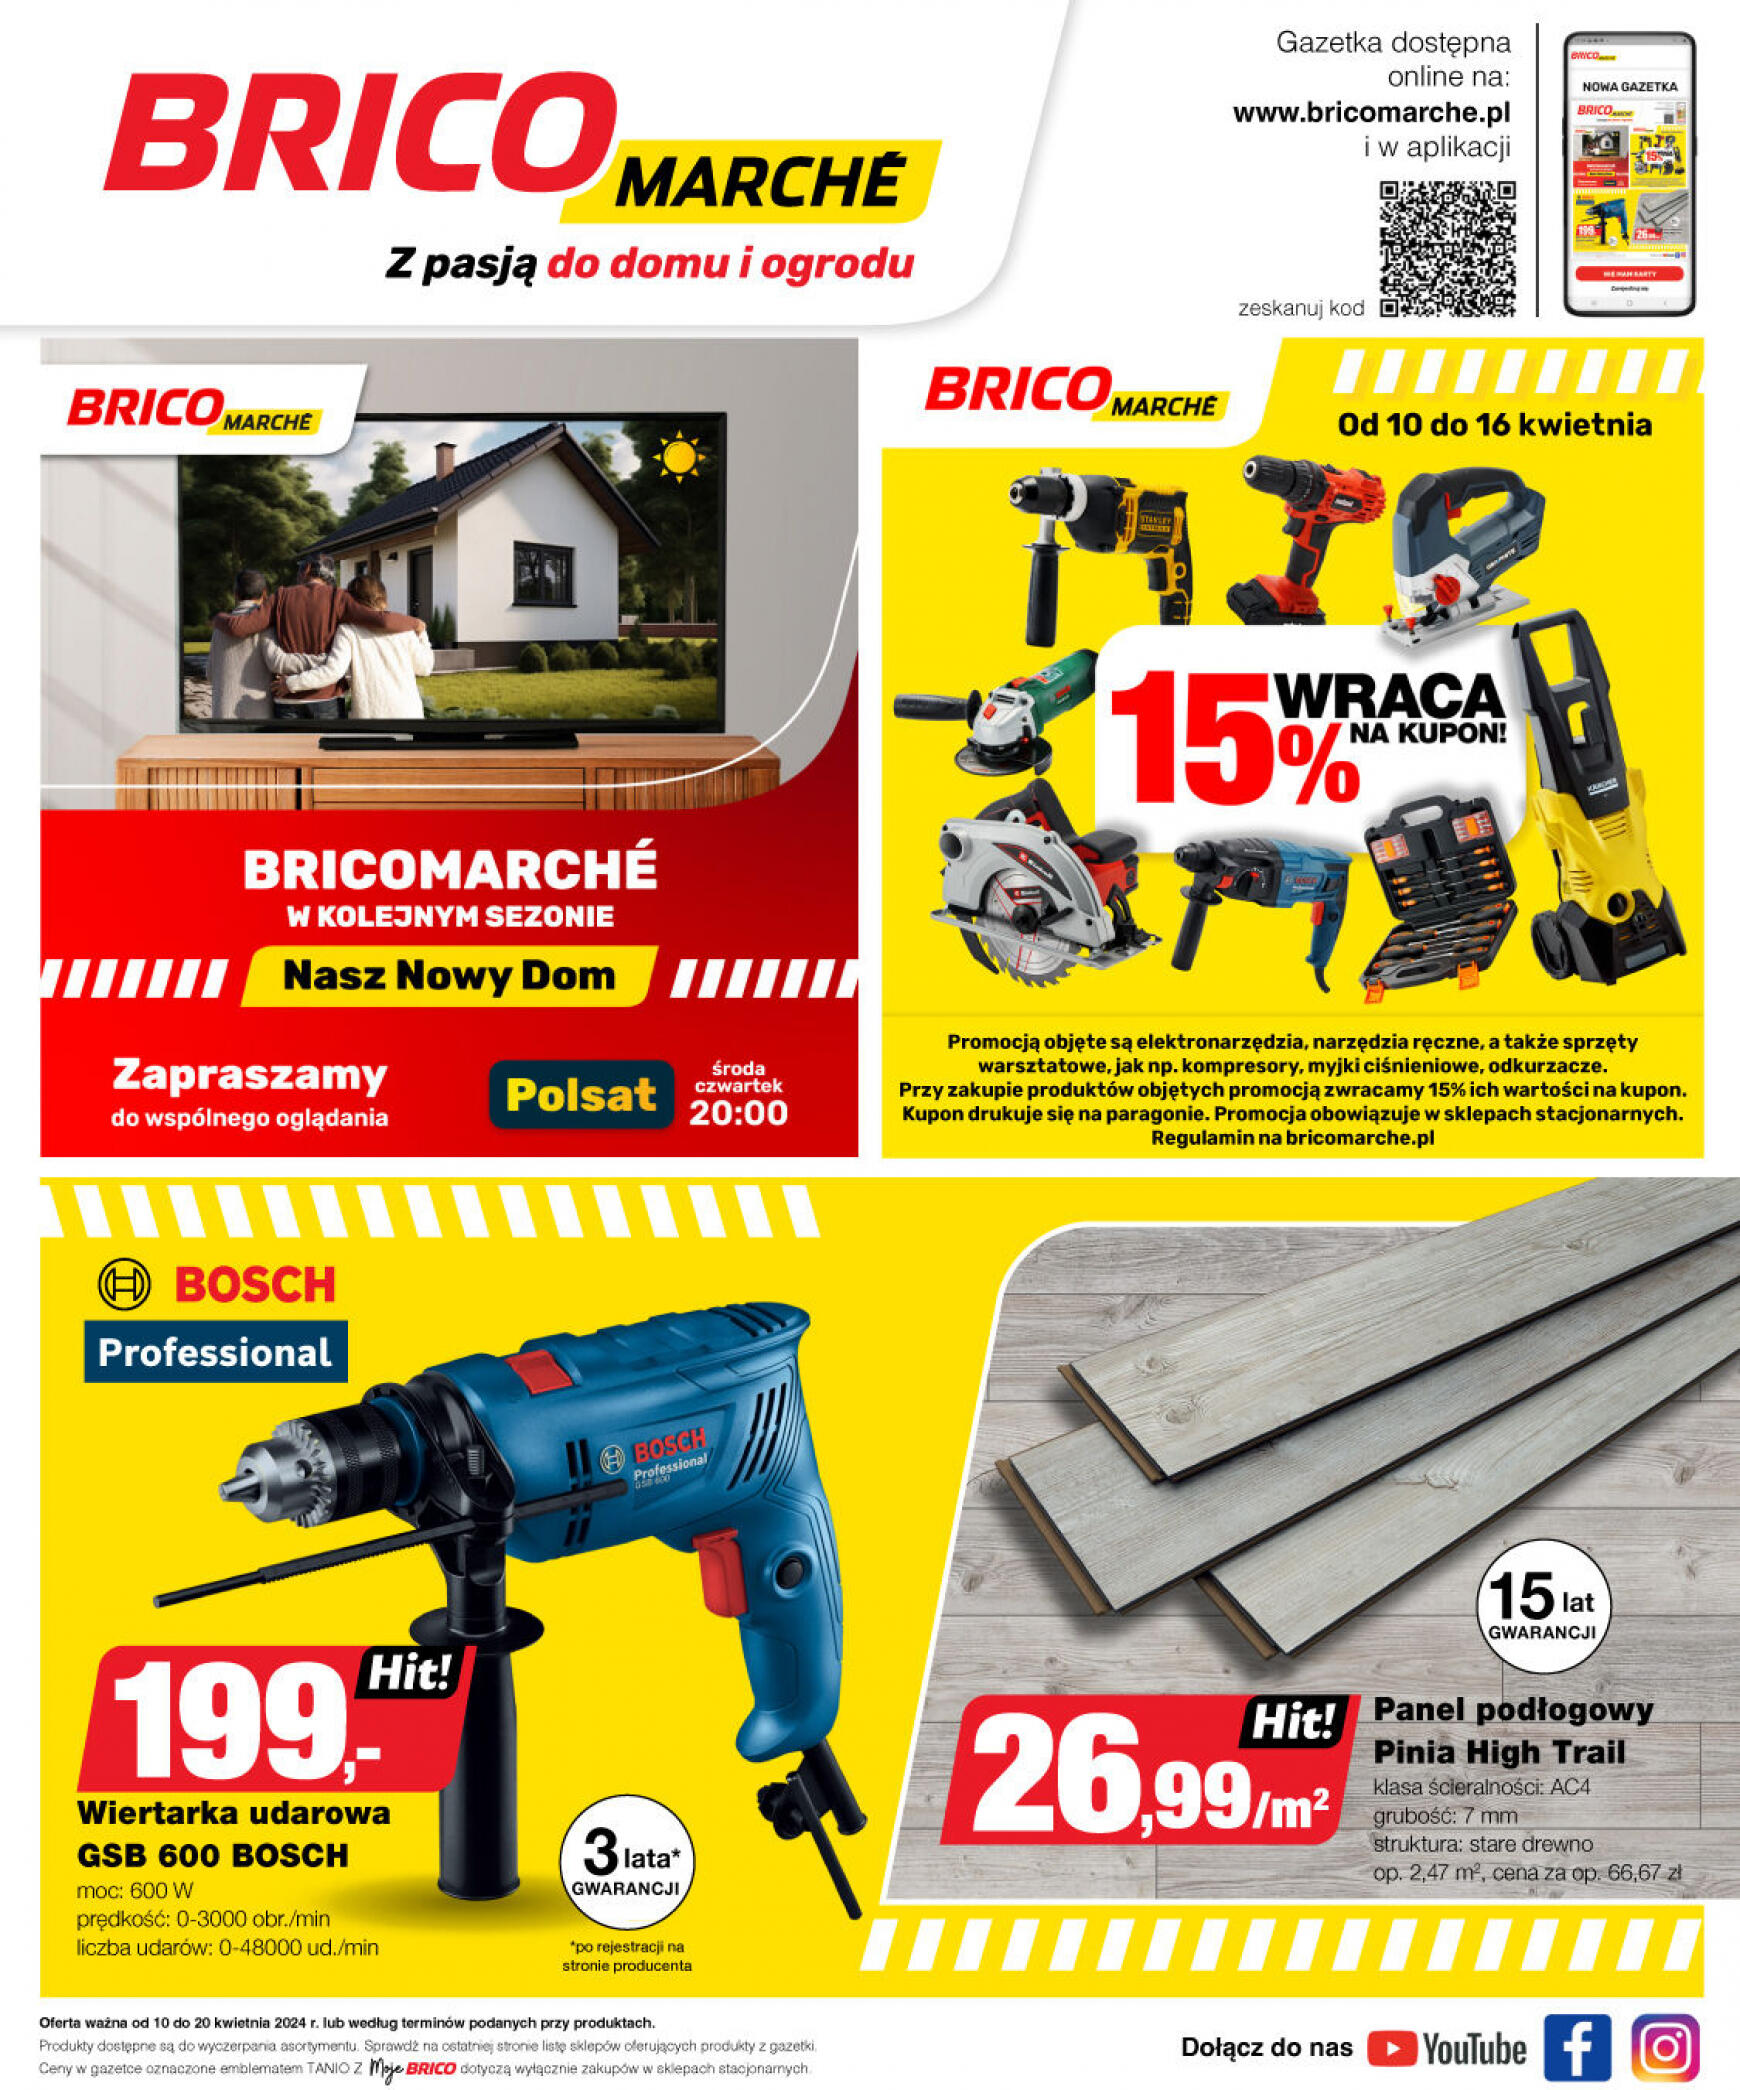 brico-marche - Bricomarché gazetka aktualna ważna od 10.04. - 20.04. - page: 16